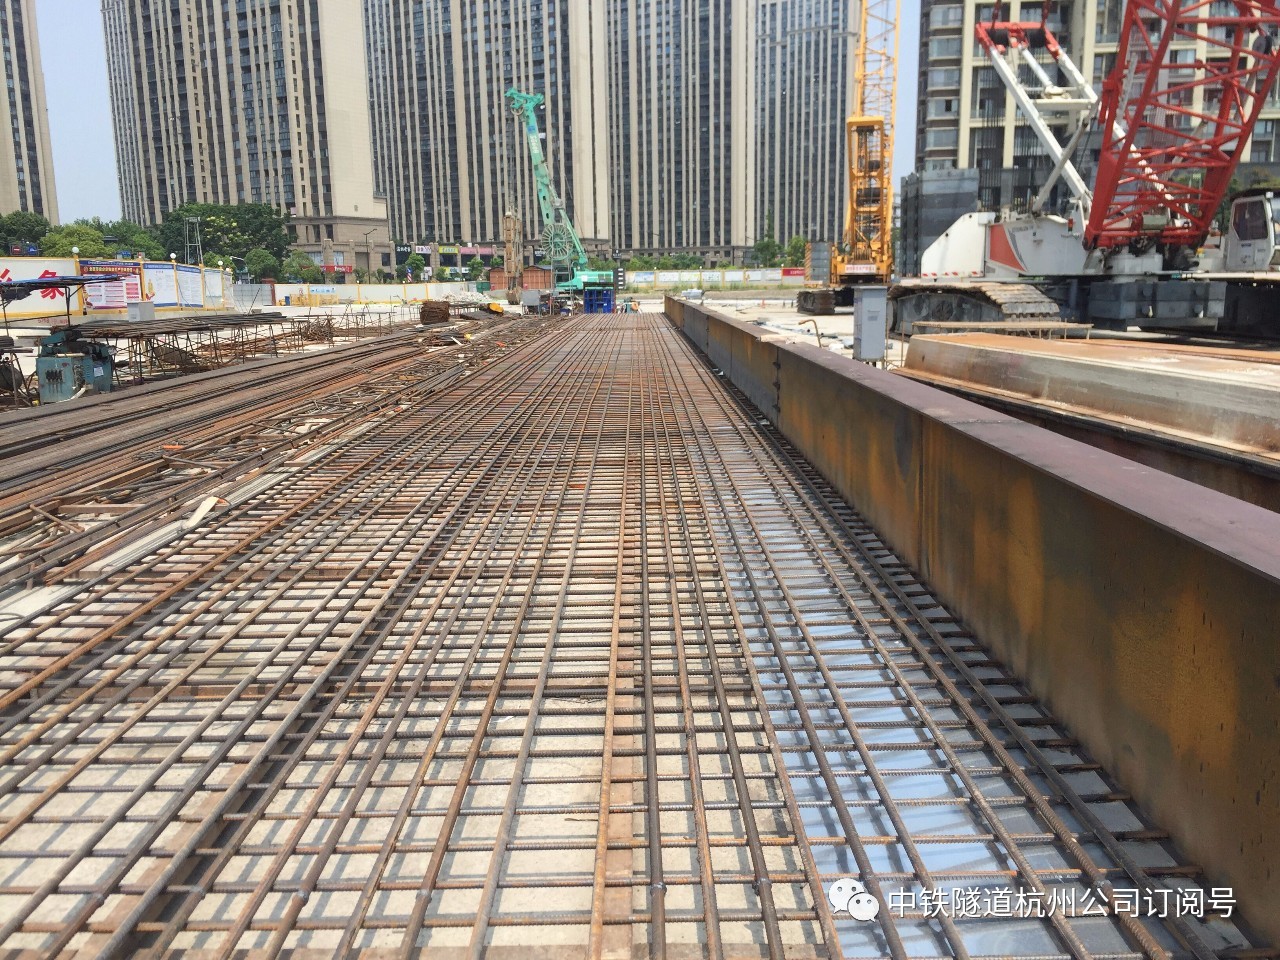 【浙江新闻】杭州地铁在建最深地下连续墙施工安全顺利收官